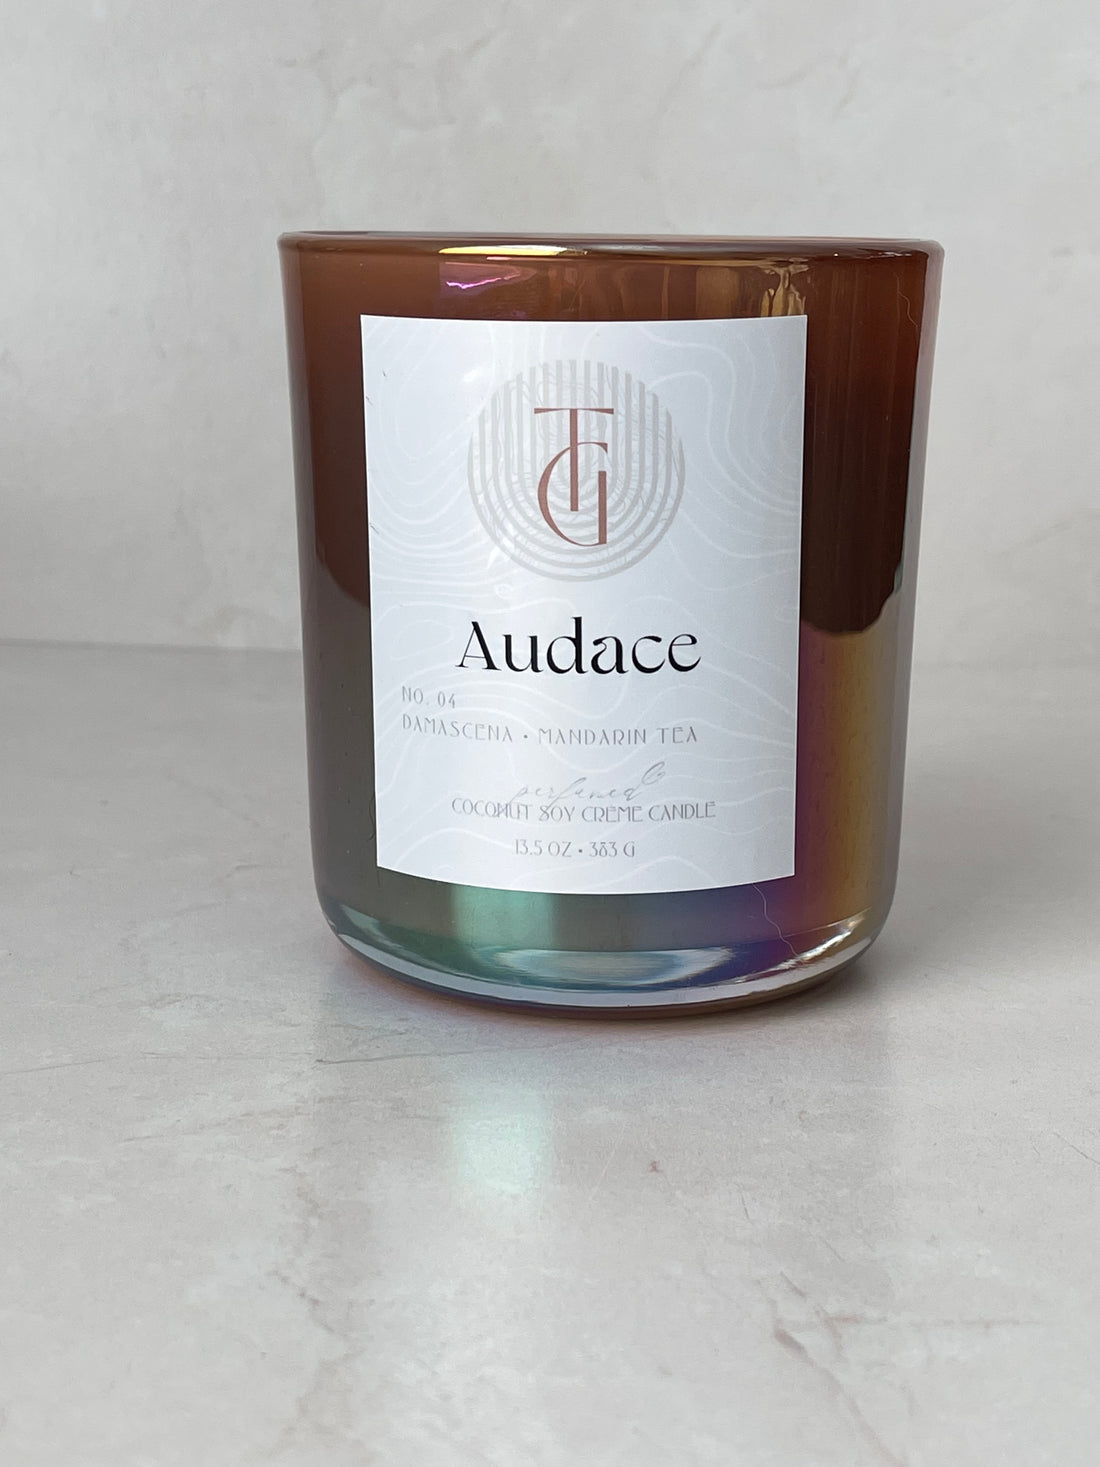 Audace Luxury Candle